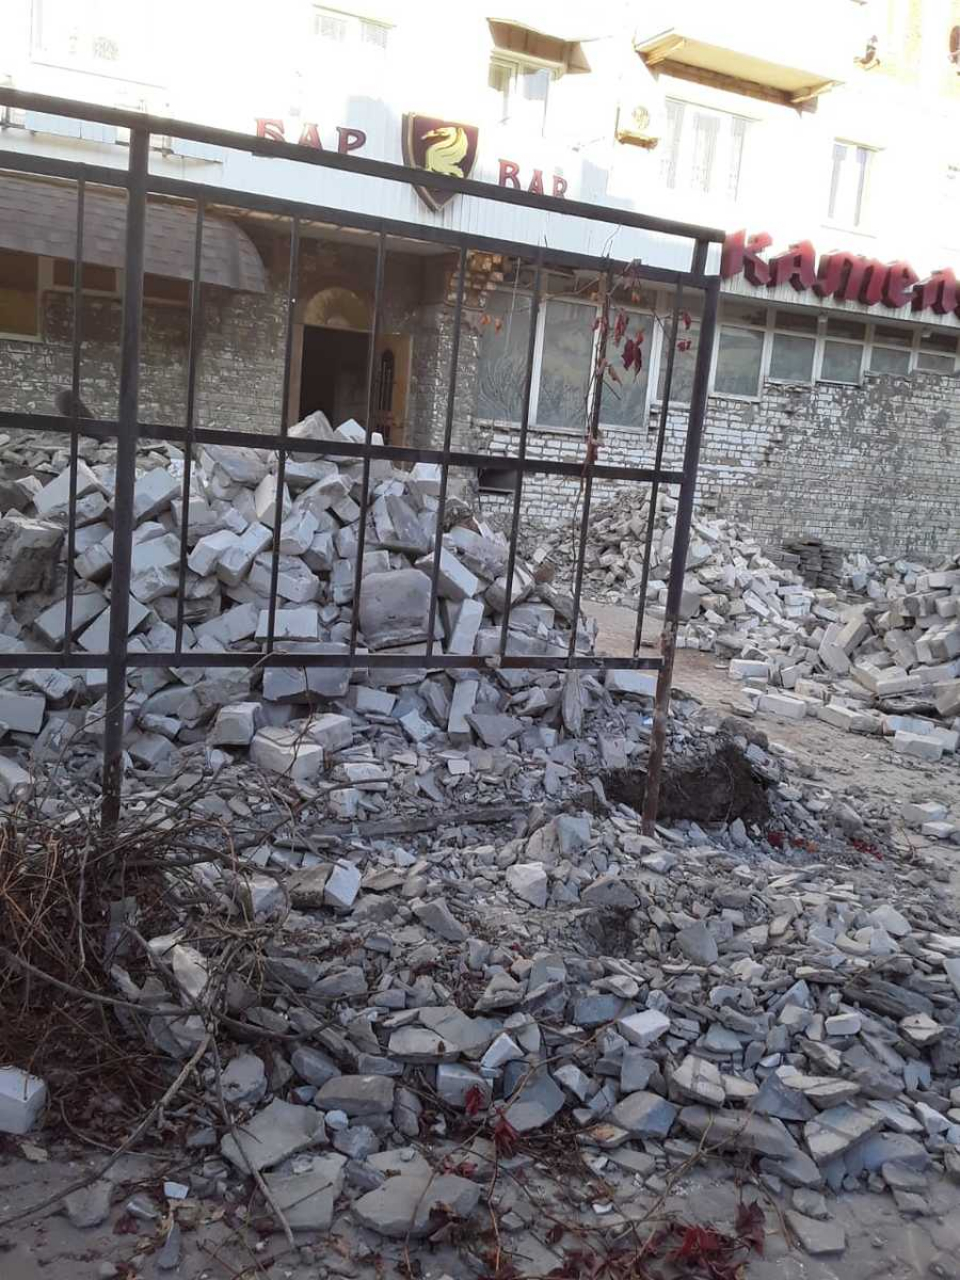 В Камышине от знаменитого ресторана «Камелот» осталась только груда мусора